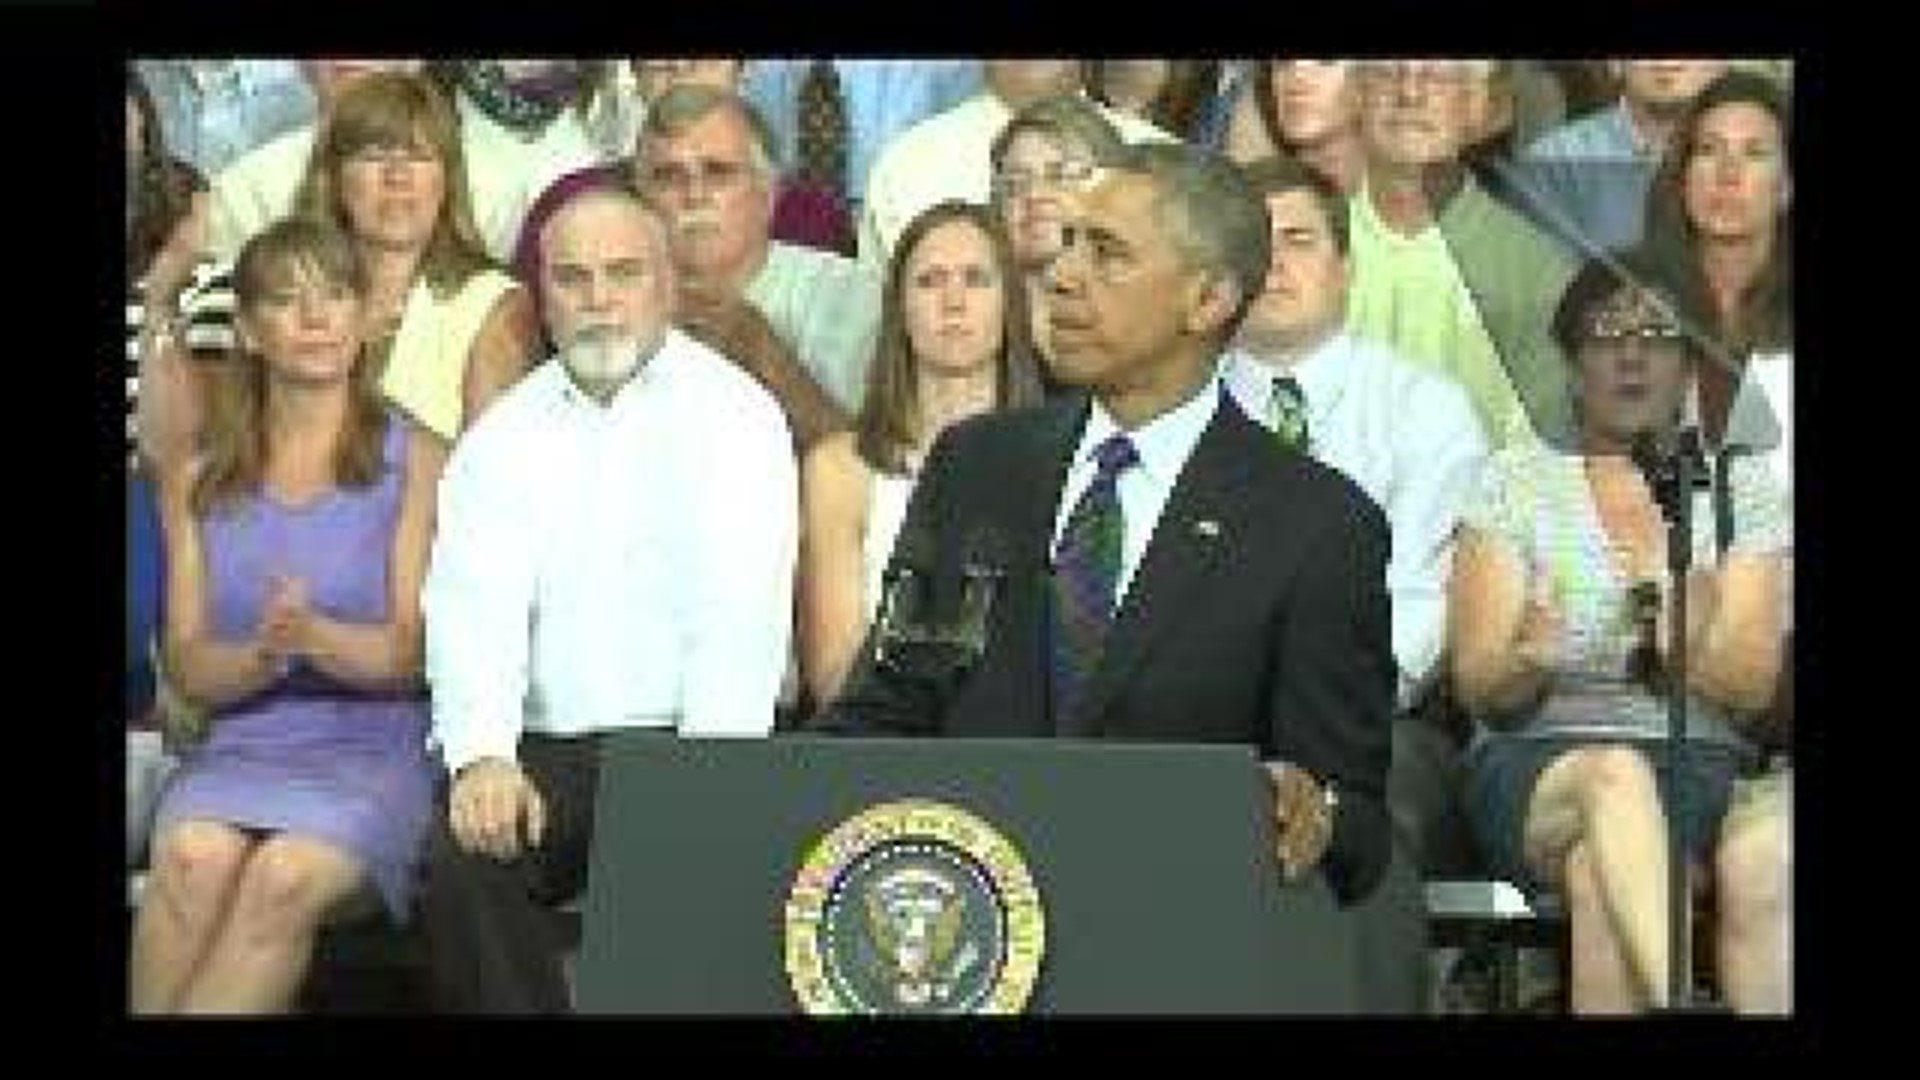 President Obama speaks in Galesburg - clip 1 of 7